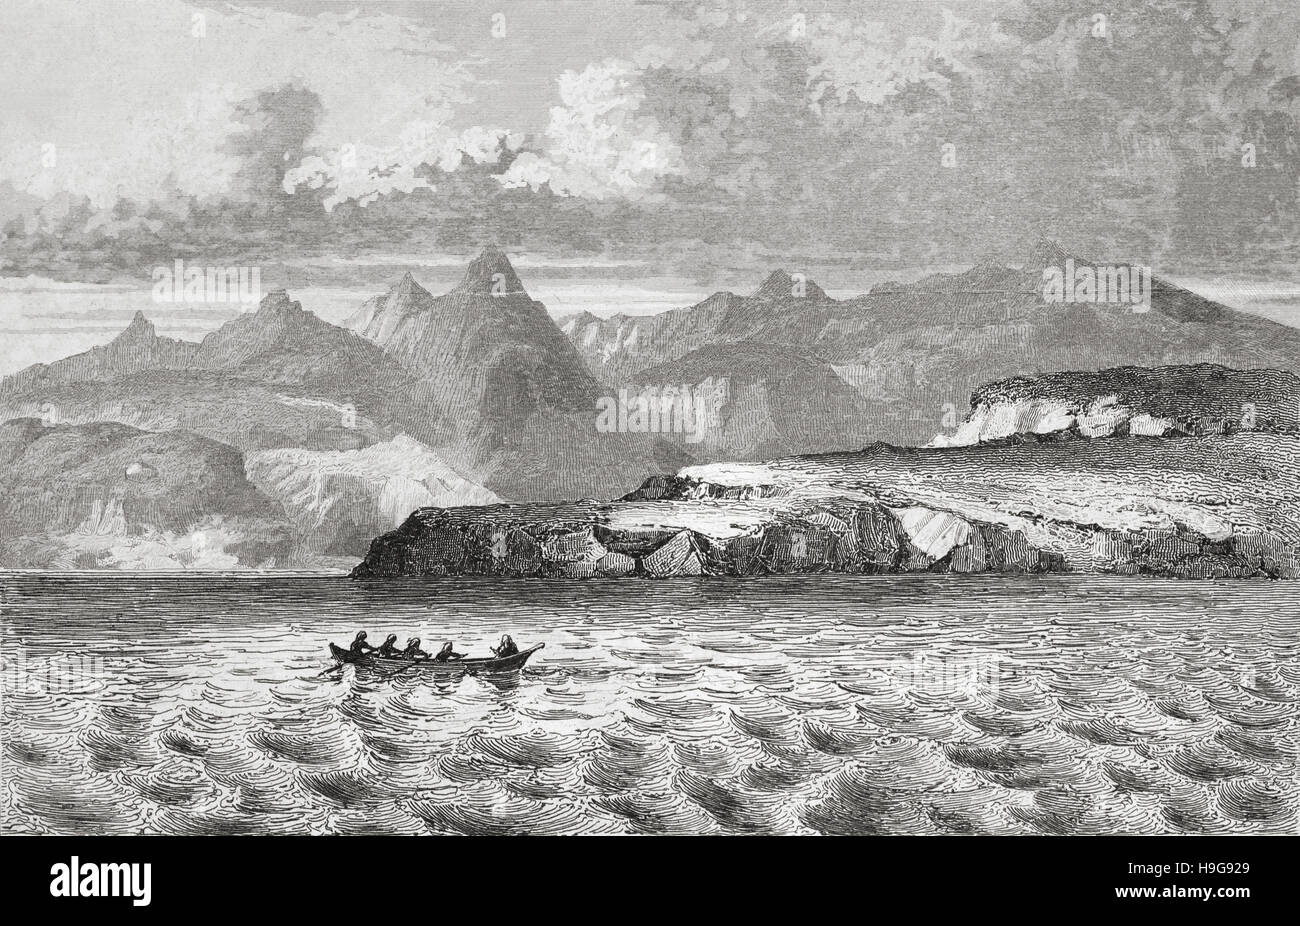 Wollaston Inseln, Kap Hoorn, Chile. 19. Jahrhundert Stahlstich von Gaucherel und Lemaitre Direxit. Stockfoto